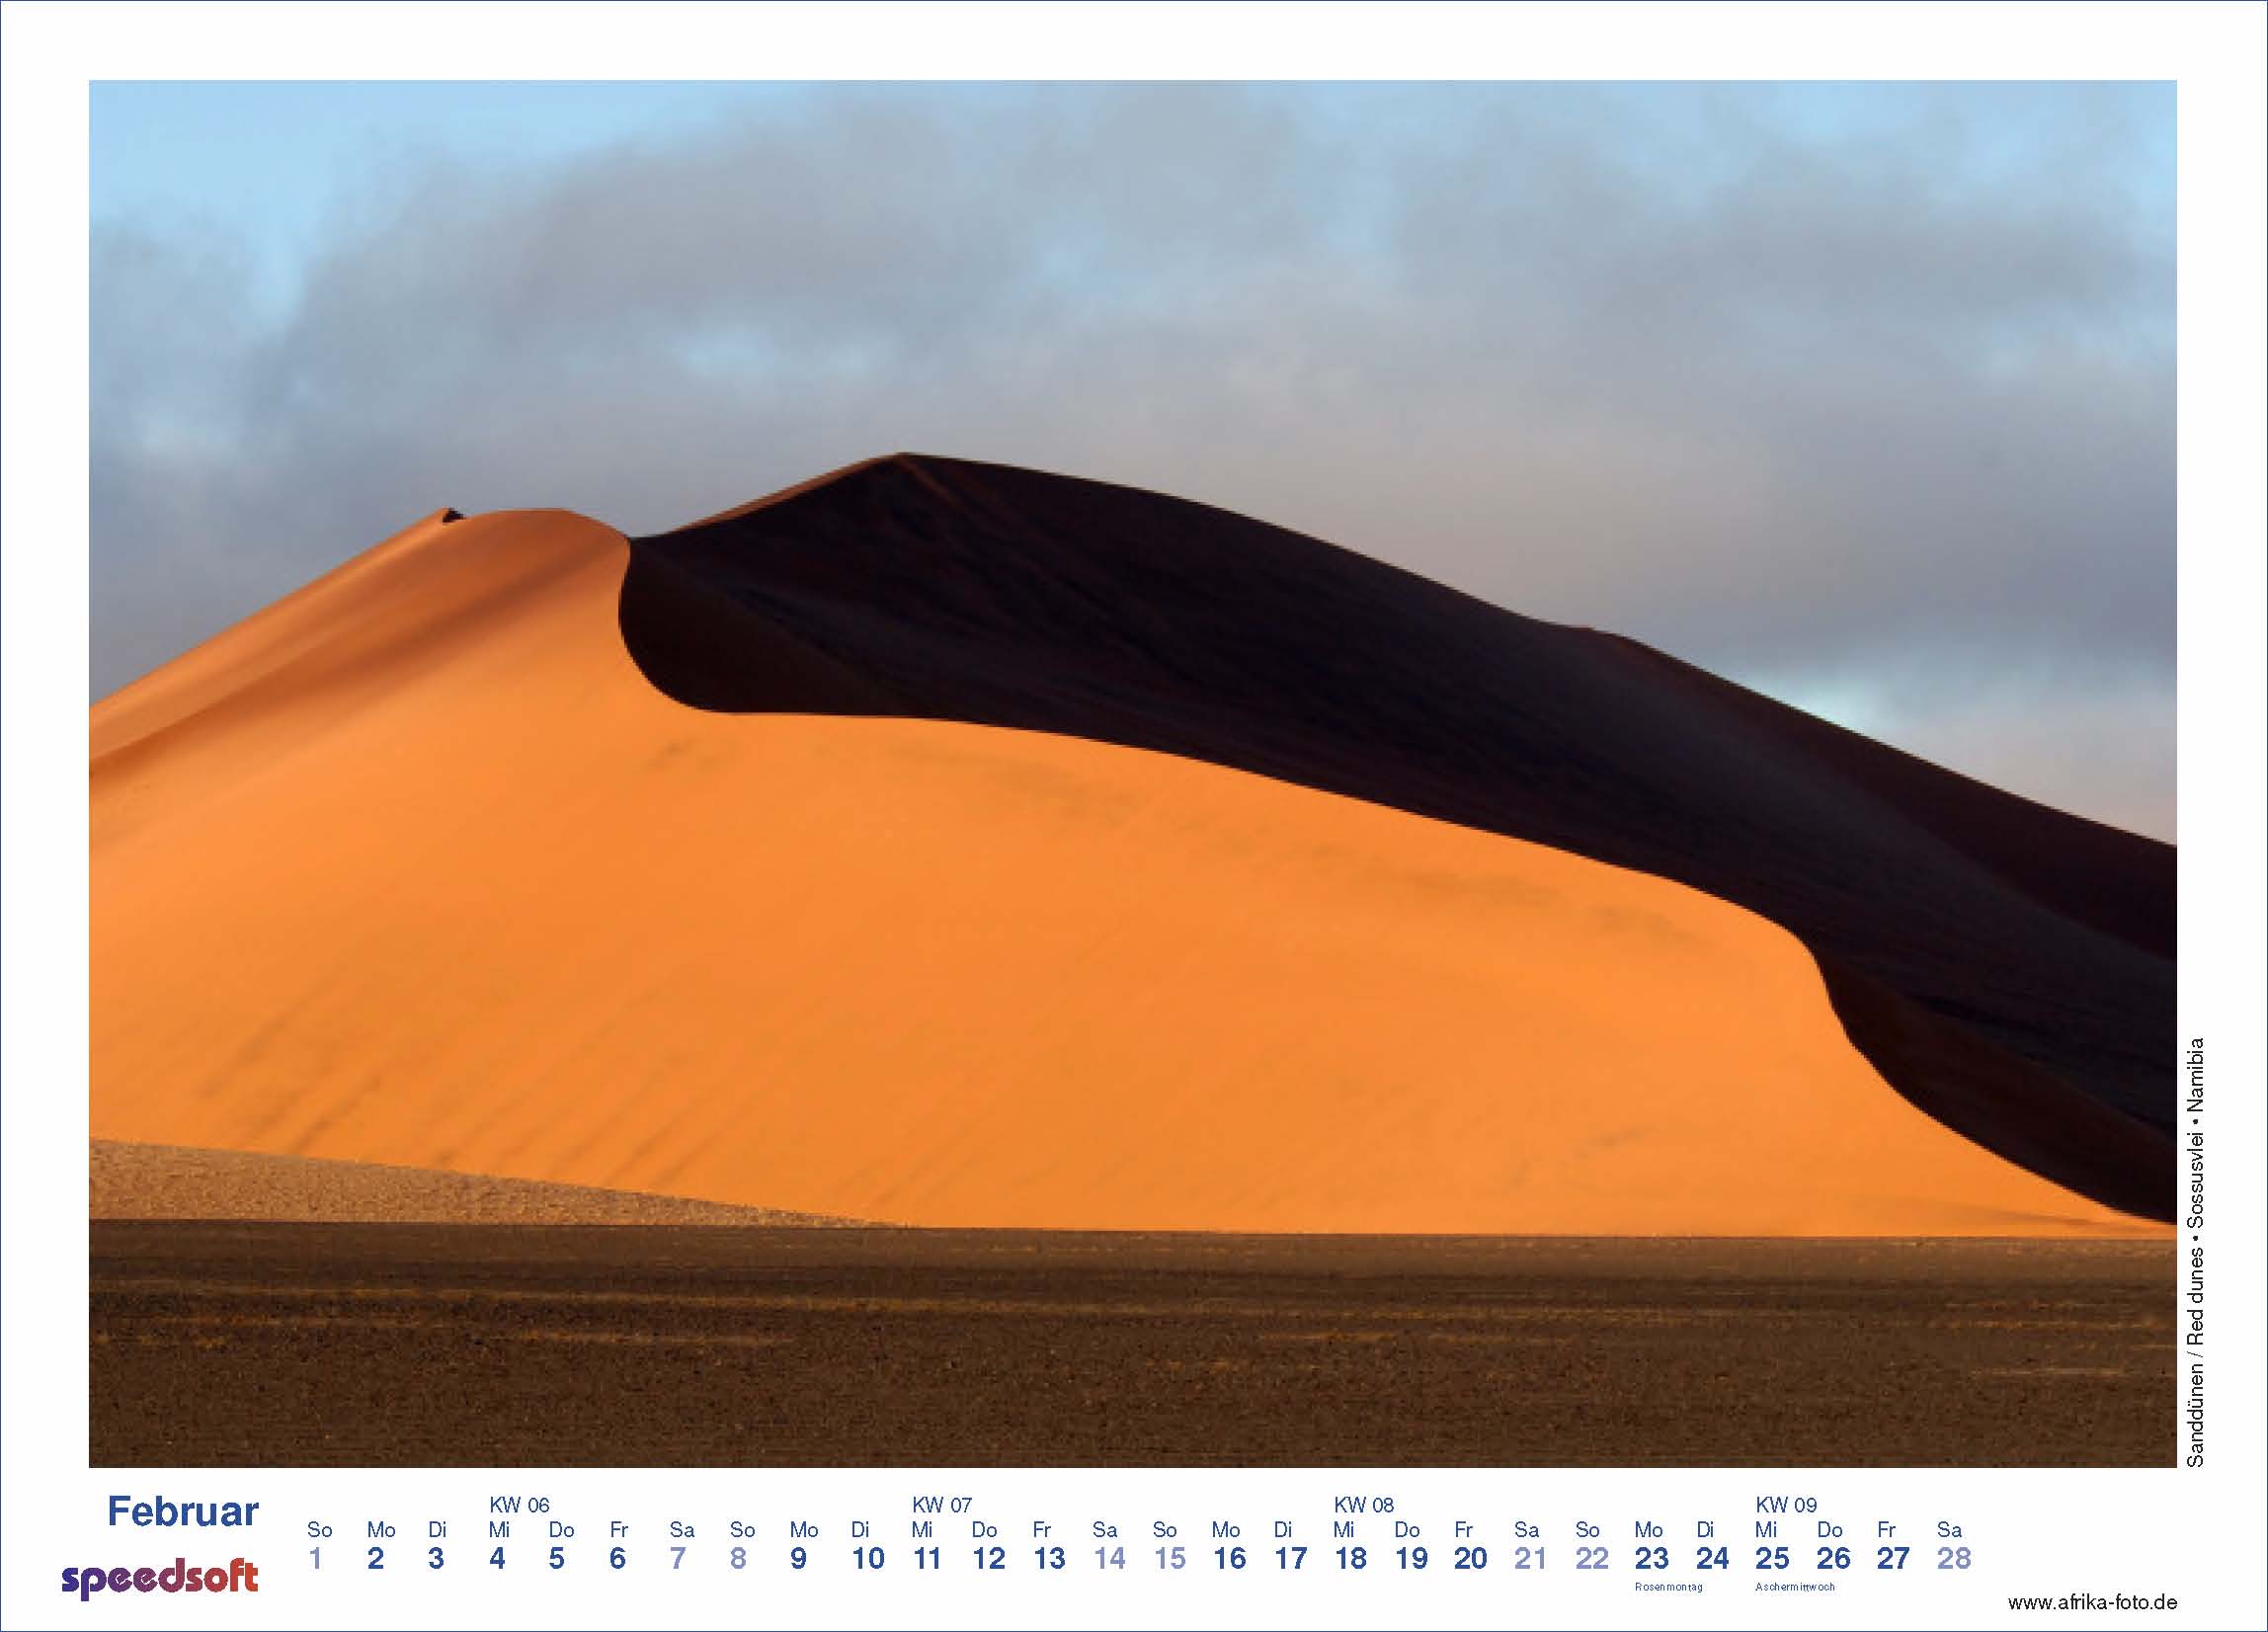 Sanddünen | Red dunes | Sossusvlei | Namibia - Kalender 2009 - Februar